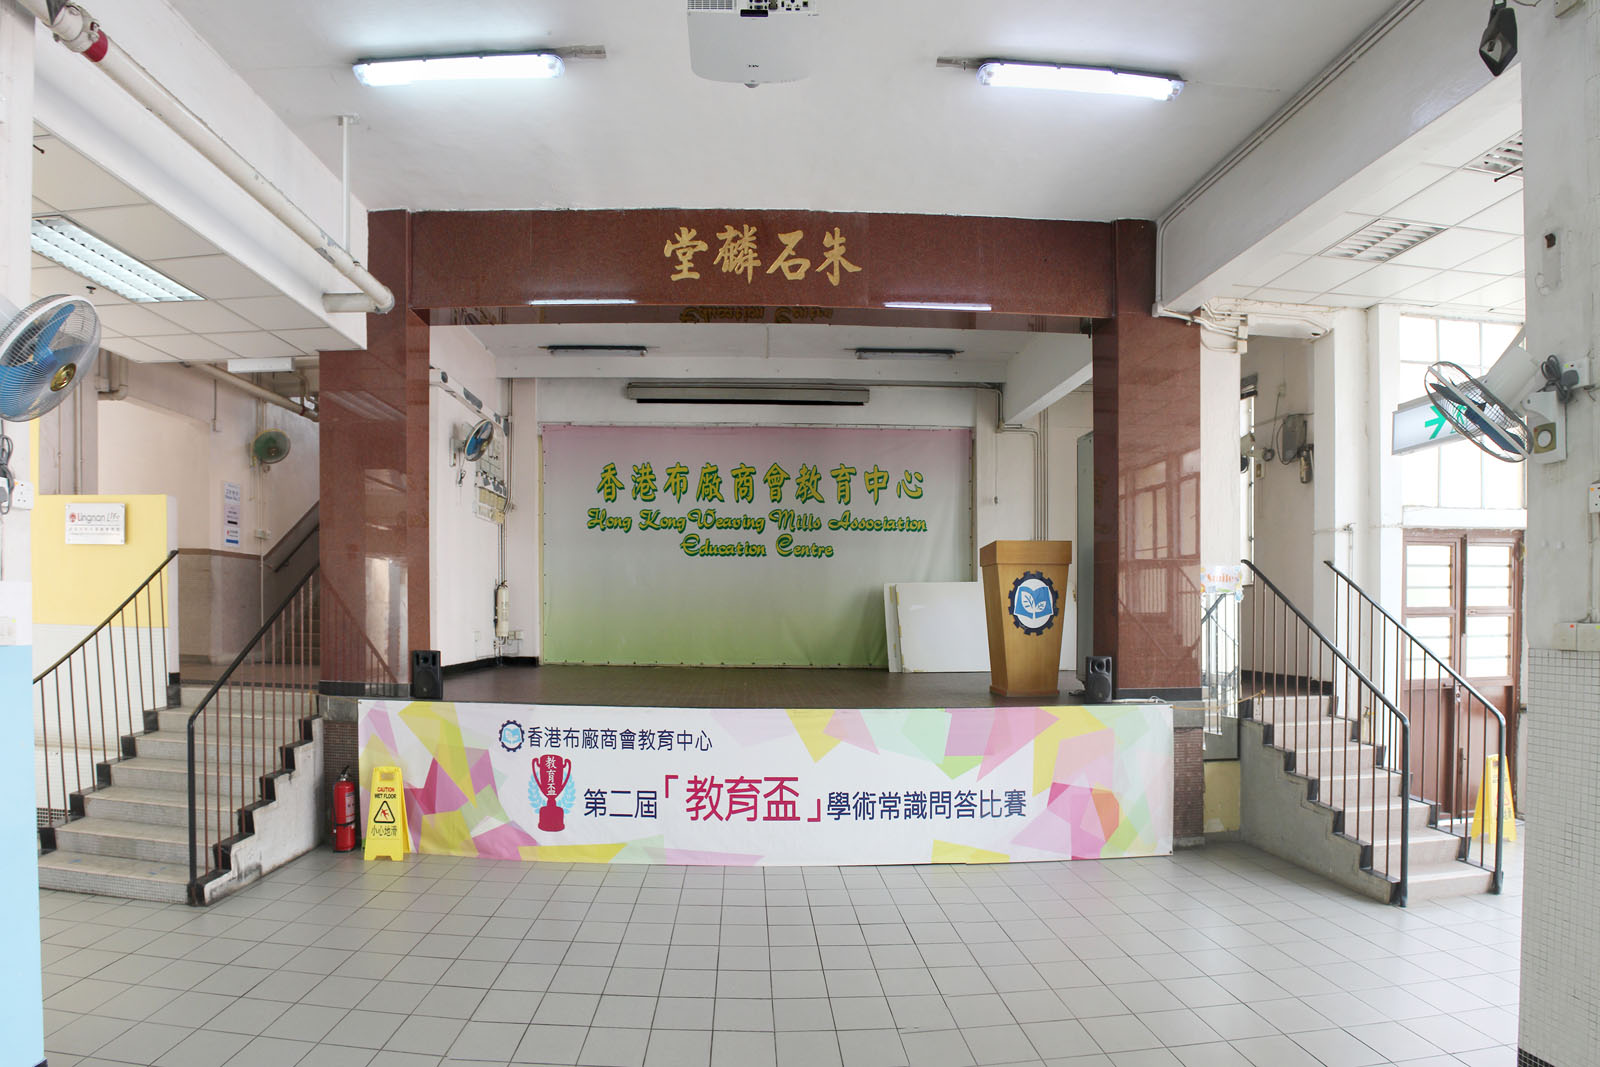 相片 4: 香港布廠商會教育中心